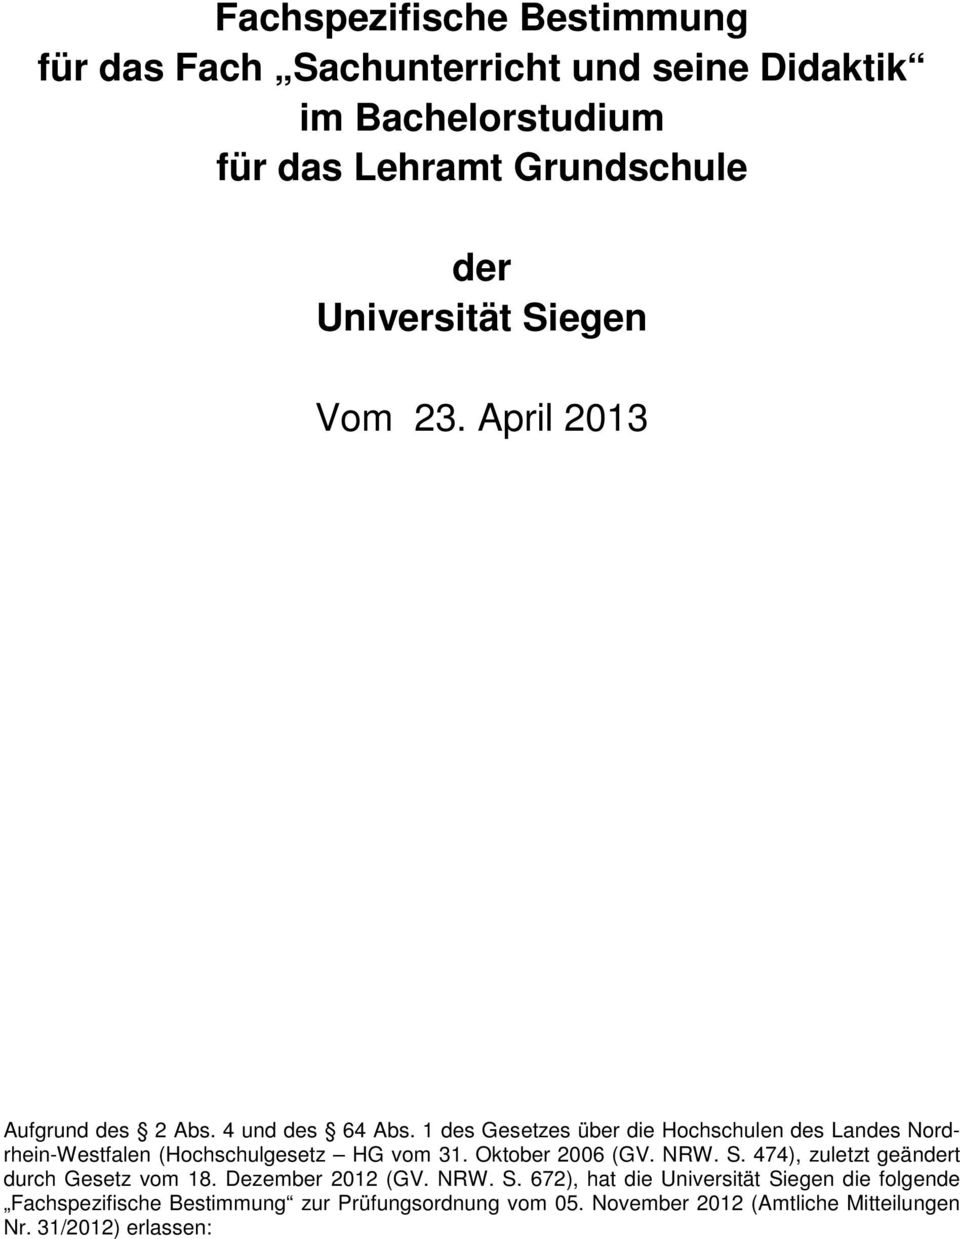 1 des Gesetzes über die Hochschulen des Landes Nordrhein-Westfalen (Hochschulgesetz HG vom 31. Oktober 2006 (GV. NRW. S.